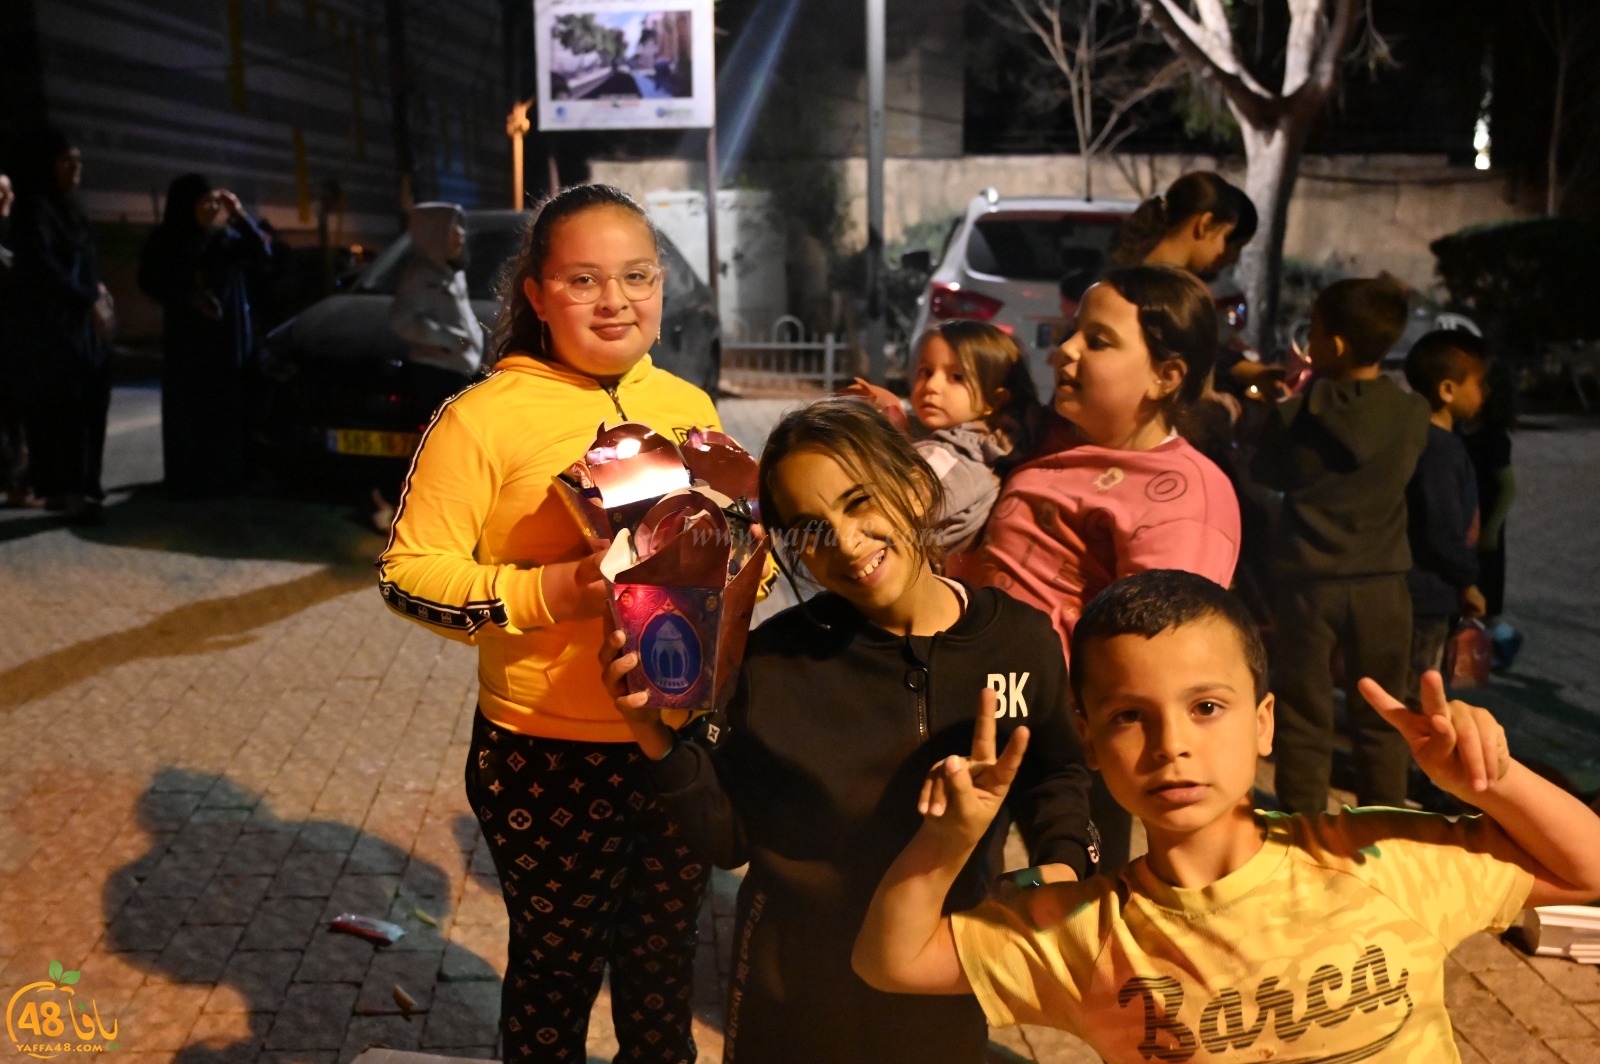  يافا: المئات في مسيرة الانوار وسط مشاركة واسعة لأطفال المدينة